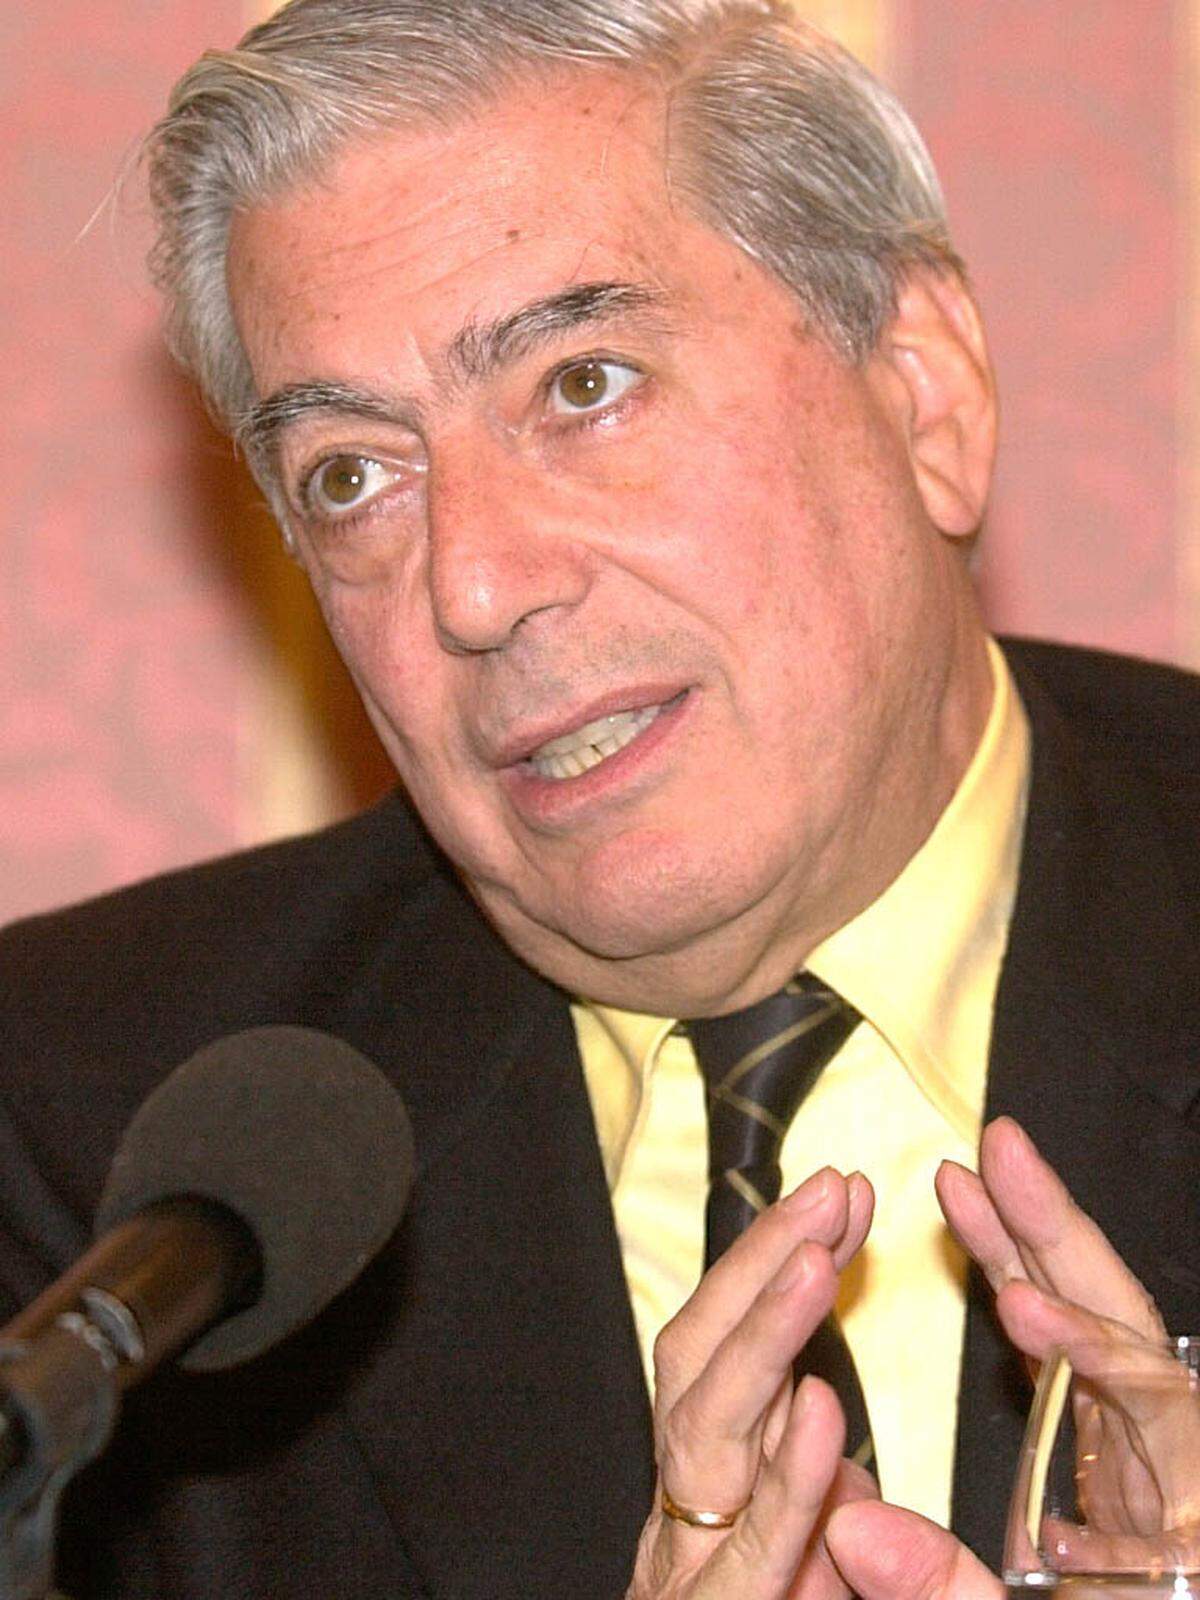 Heute ist Vargas Llosa der berühmteste Autor des Andenstaates. Er wurde bereits mit zahlreichen Preisen, darunter 1995 der Cervantes-Preis und 1996 der Friedenspreis des Deutschen Buchhandels, ausgezeichnet.